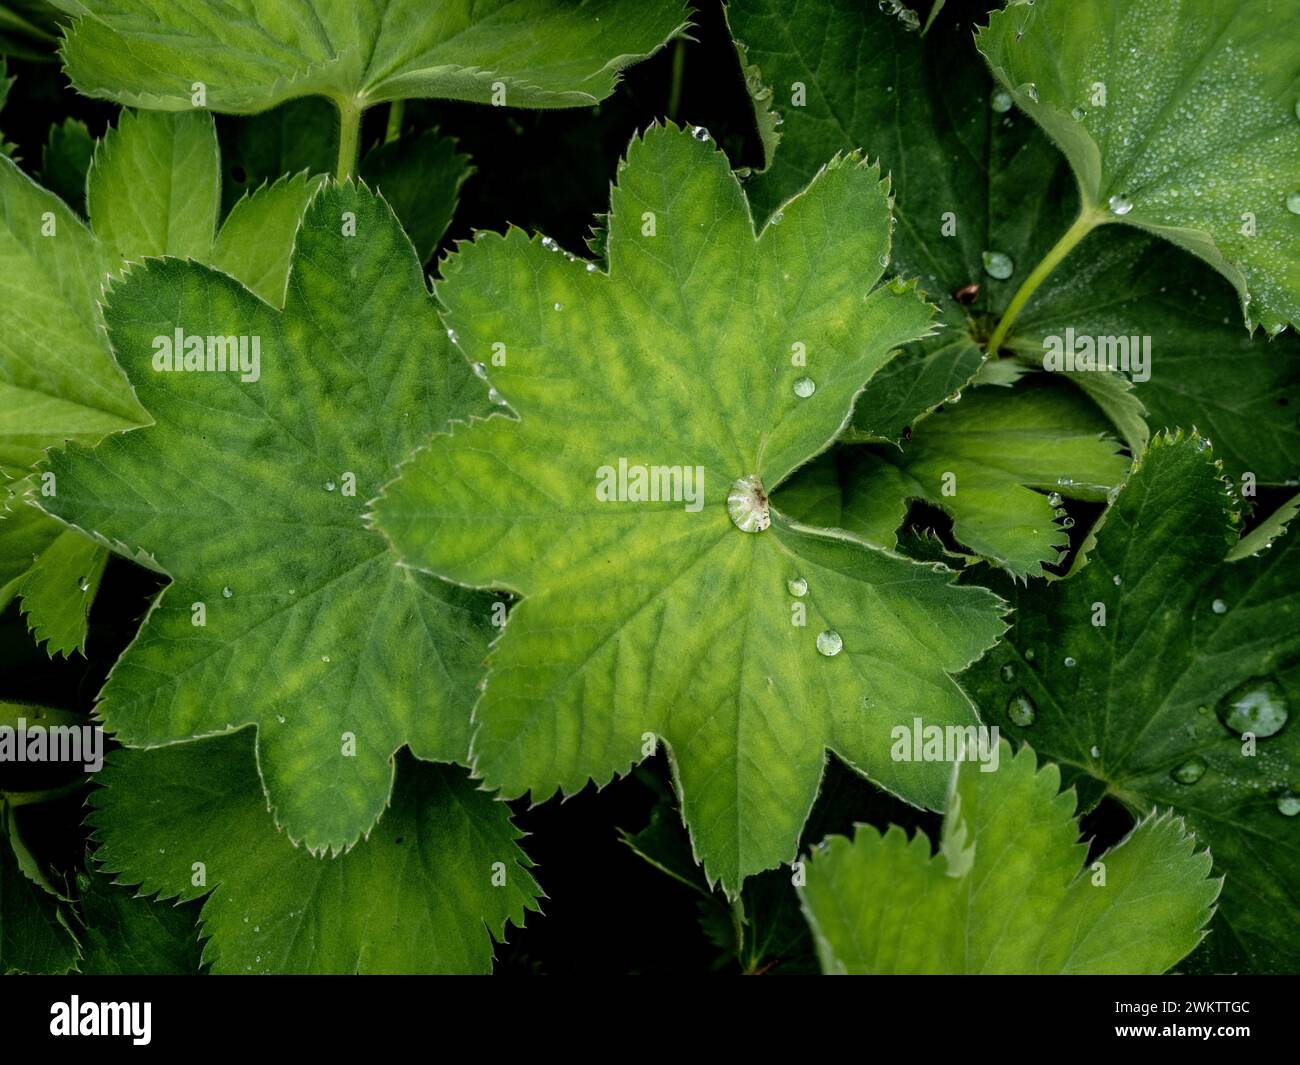 Diamond-like water droplets on the fan shaped leaves of Alchemilla Mollis growing in a garden Stock Photo